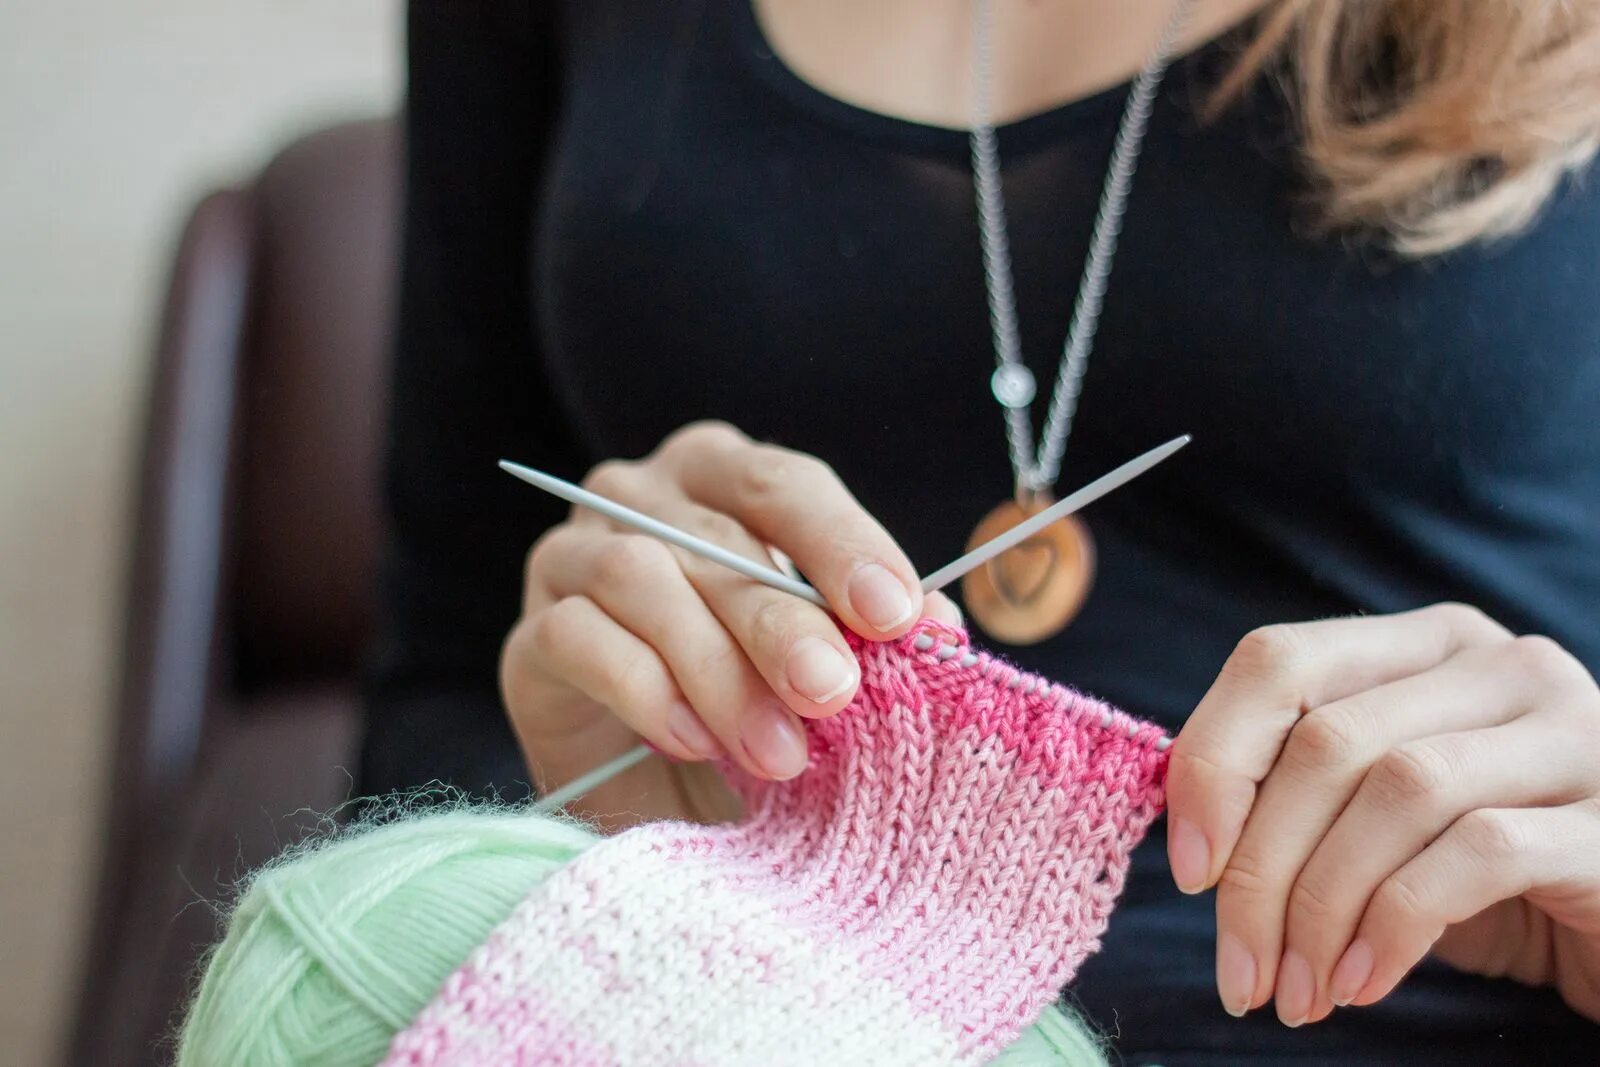 Knitting hands. Вязальные полезности. Ремесло вязание. Занятие вязанием. Уроки вязания - Crochet and Knitting Lessons.